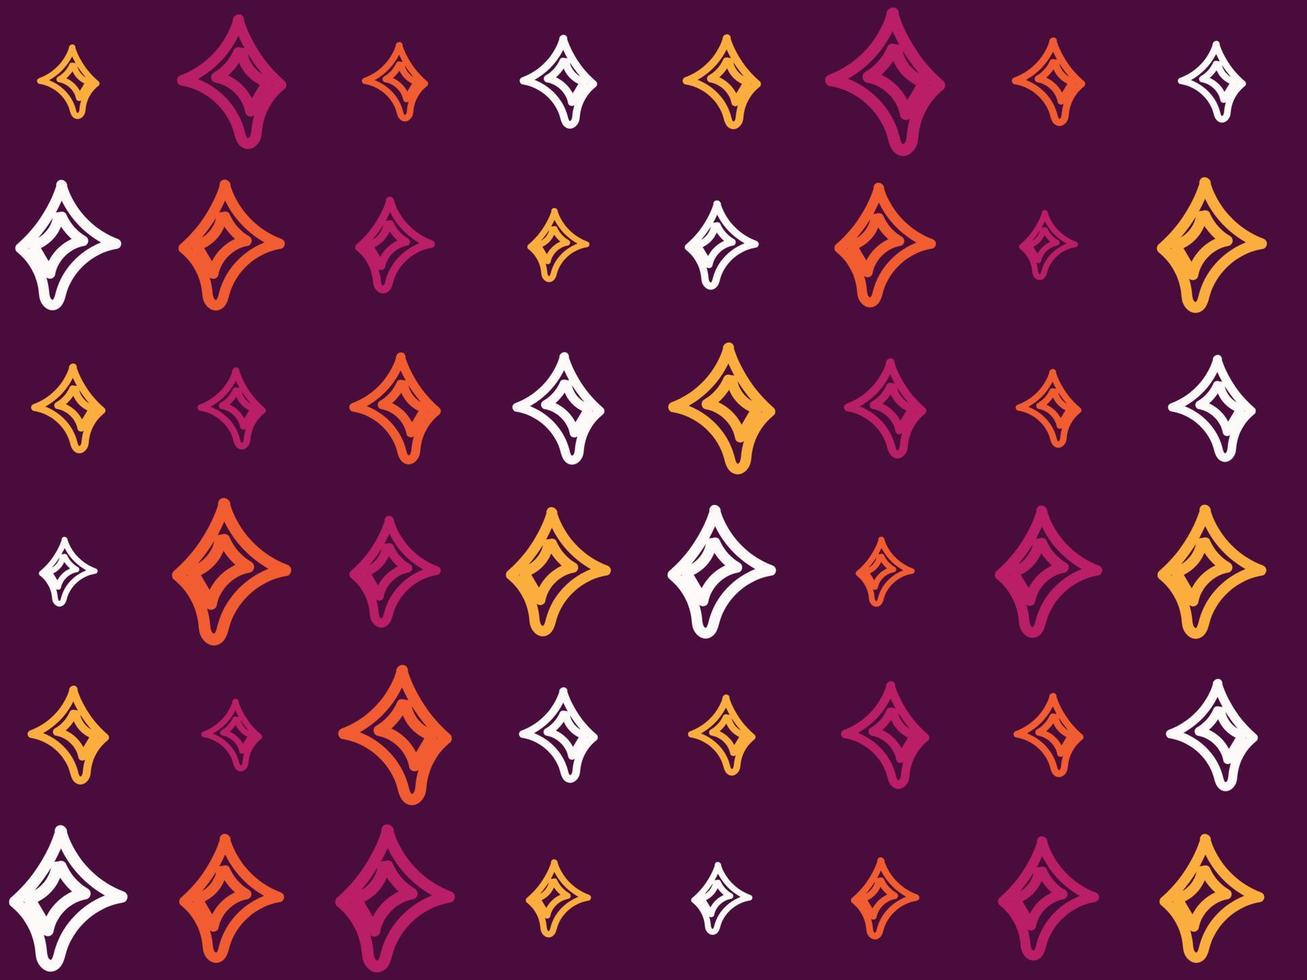 Le tissu aztèque de dessin d'étoiles à main levée imprime un motif sans couture ouzbek ikat-produit de soie traditionnel en ouzbékistan et en asie centrale, vecteur